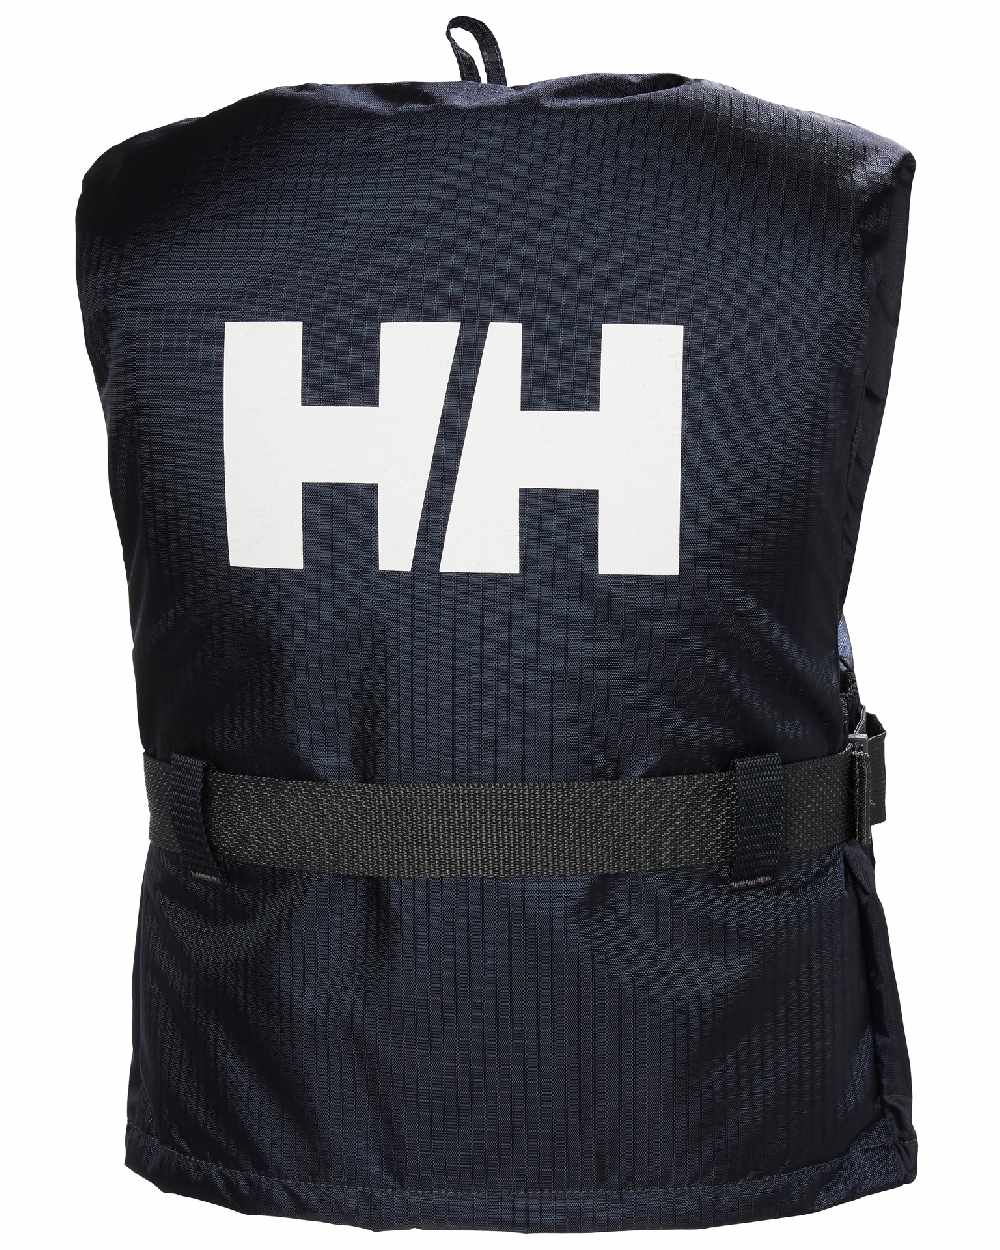 Helly Hansen Bowrider Life Vest